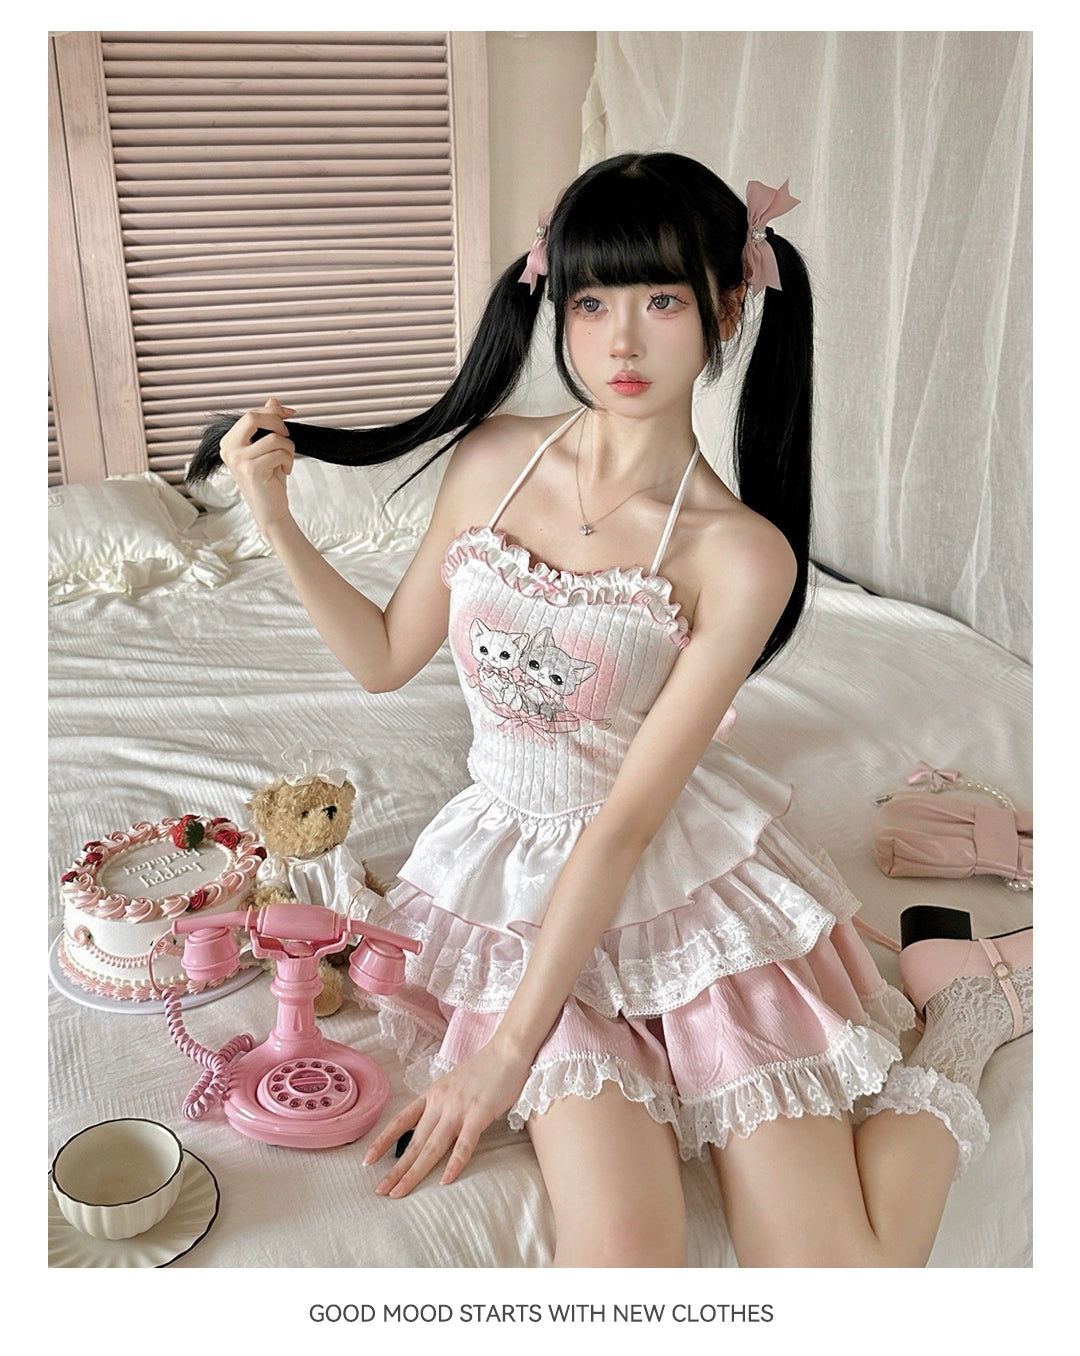 Ryousangata Skirt Set Pink Cardigan White Straps Top 37008:548372